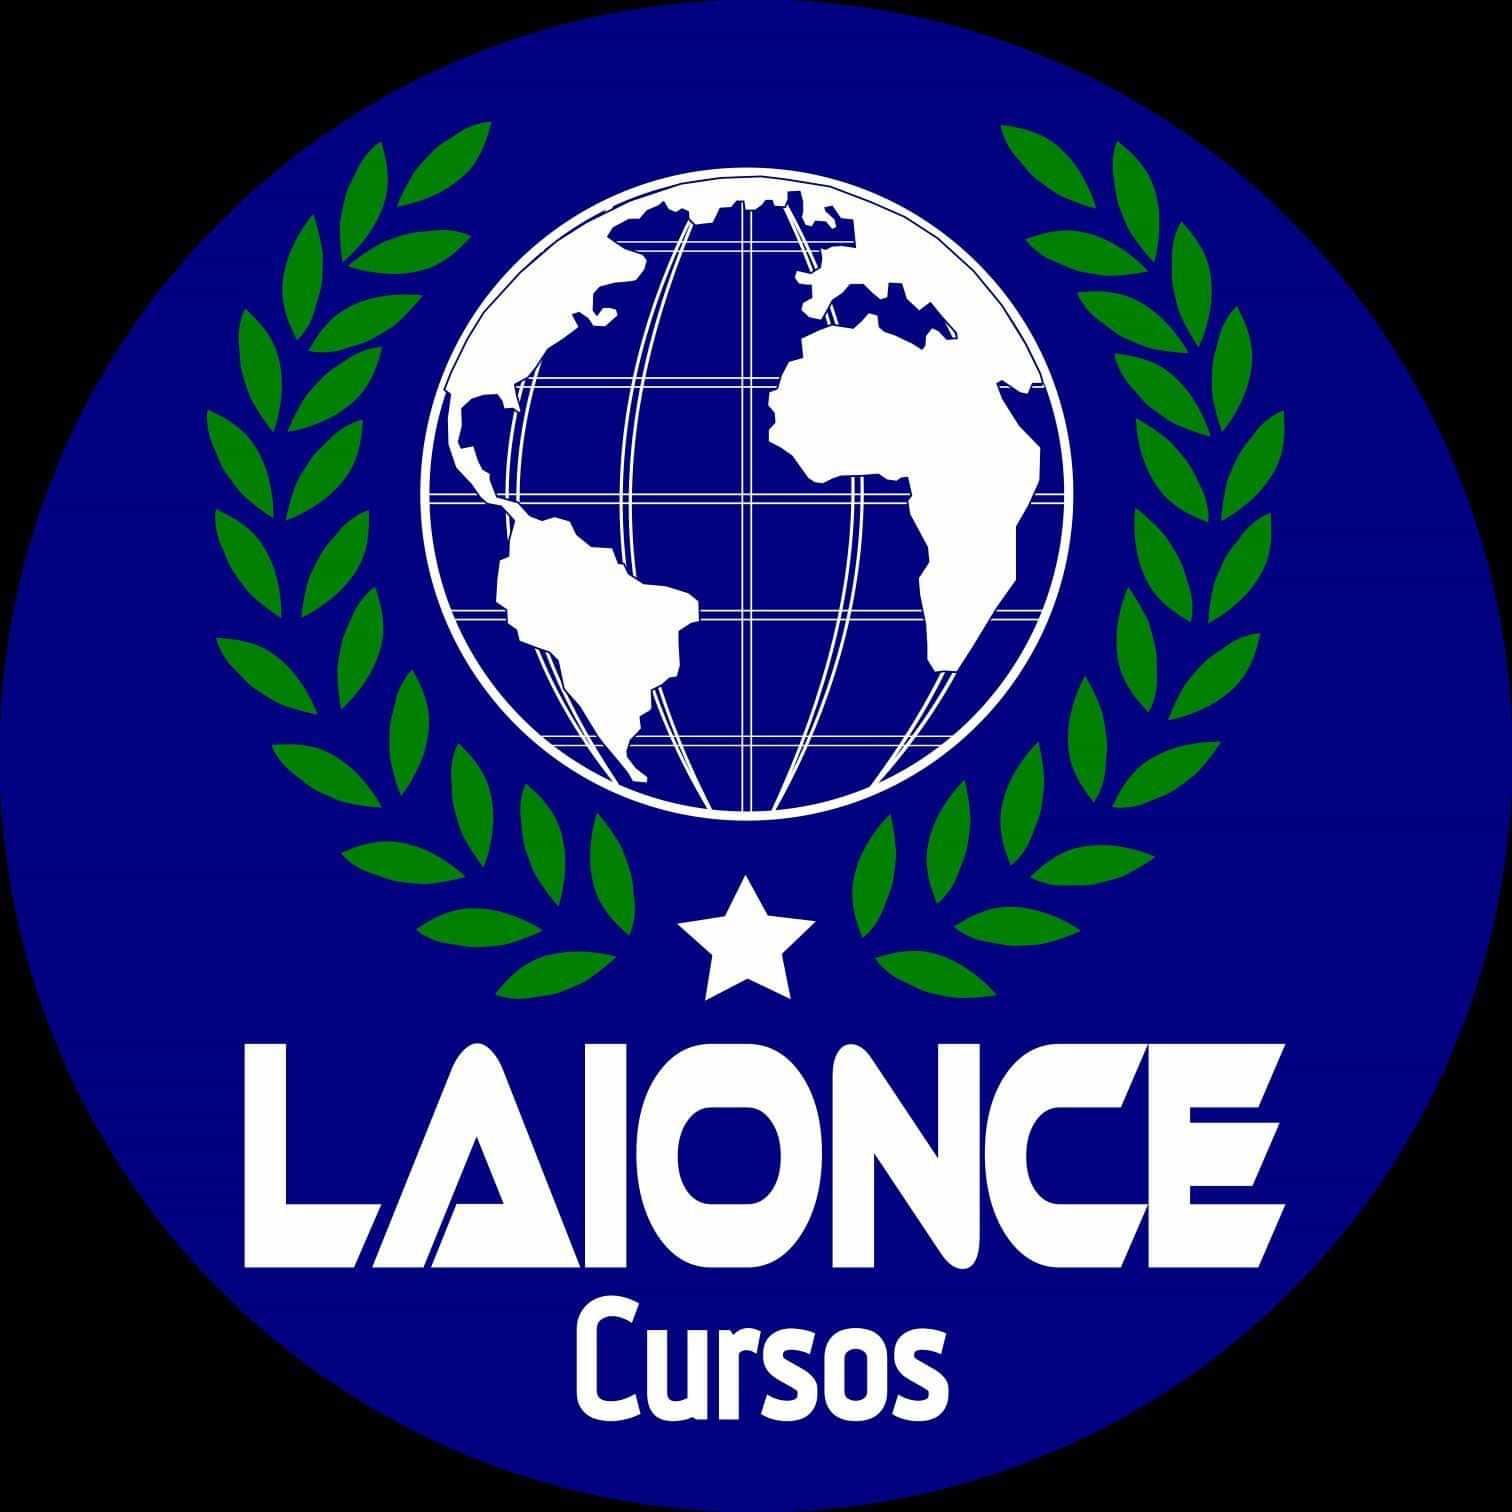  Laionce Cursos Especializados - Montes Claros 